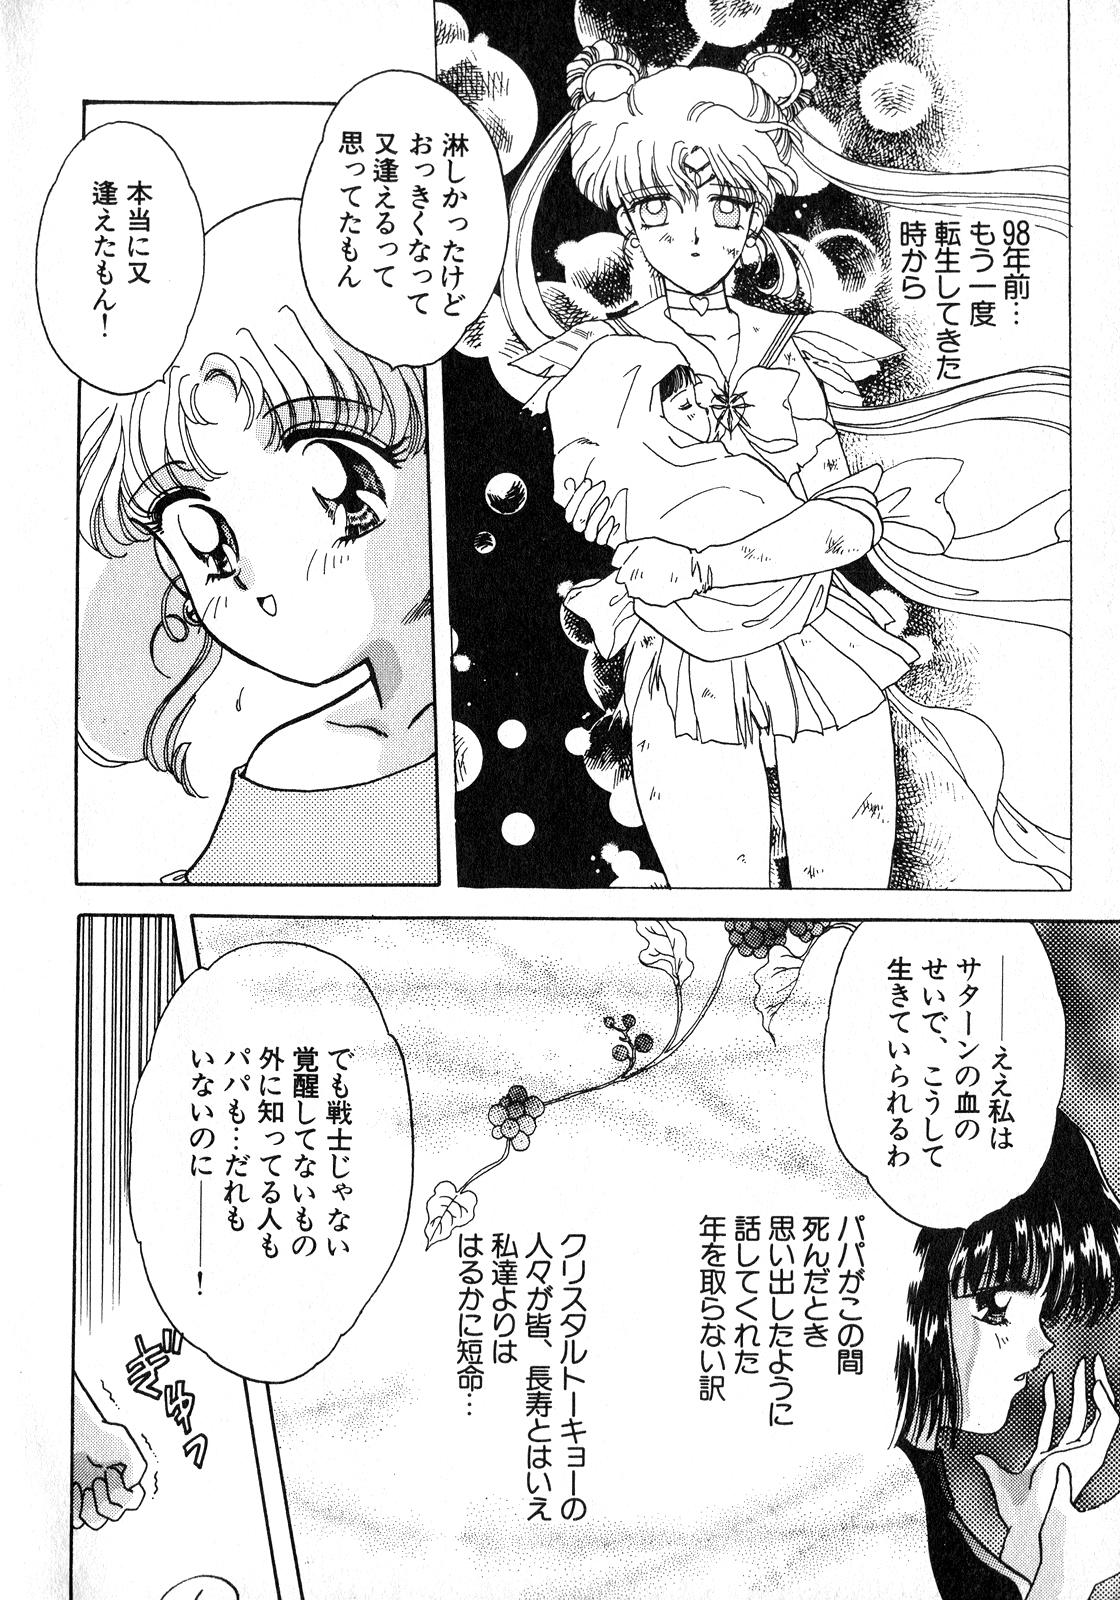 Butt Plug Lunatic Party 8 - Sailor moon Voyeur - Page 7